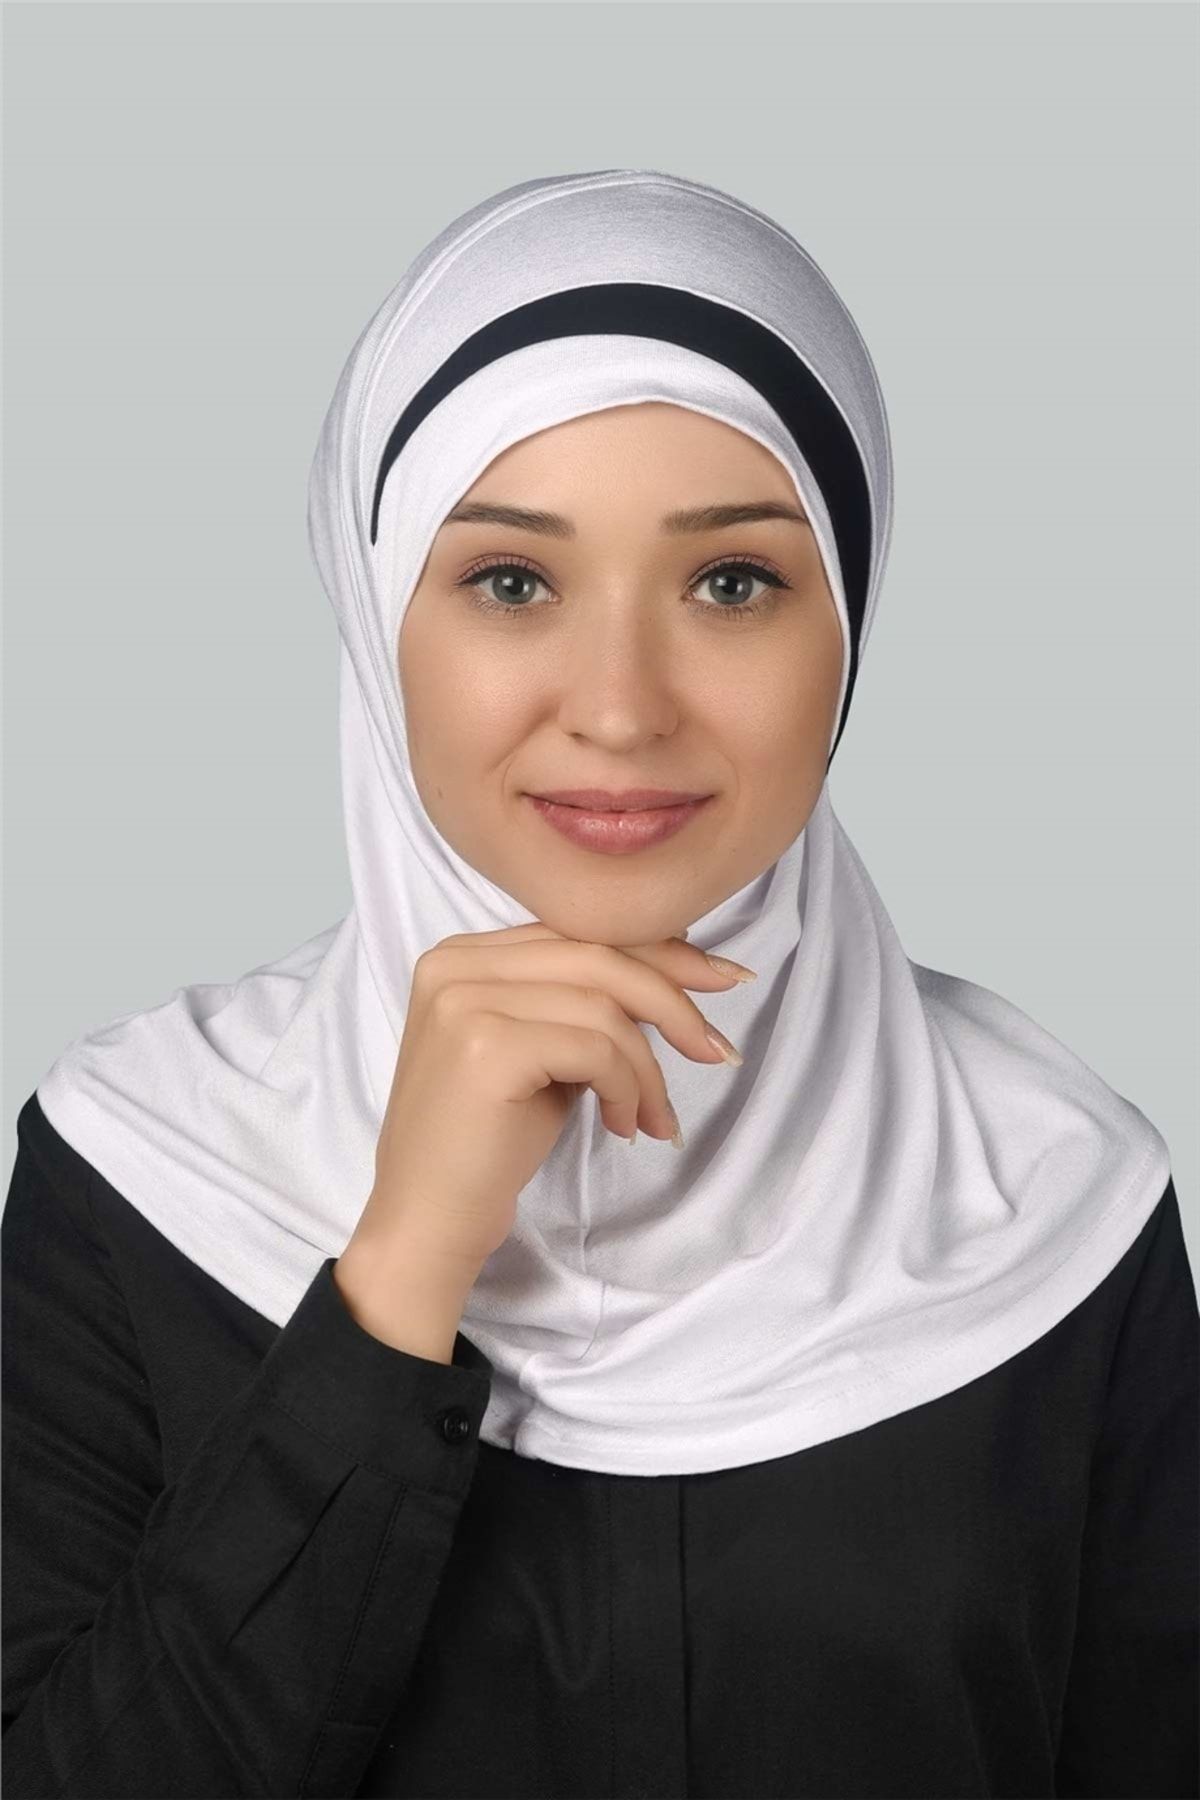 Altobeh Pratik Eşarp Hazır Türban Özel Hilal Detaylı Hijab - Beyaz - Siyah